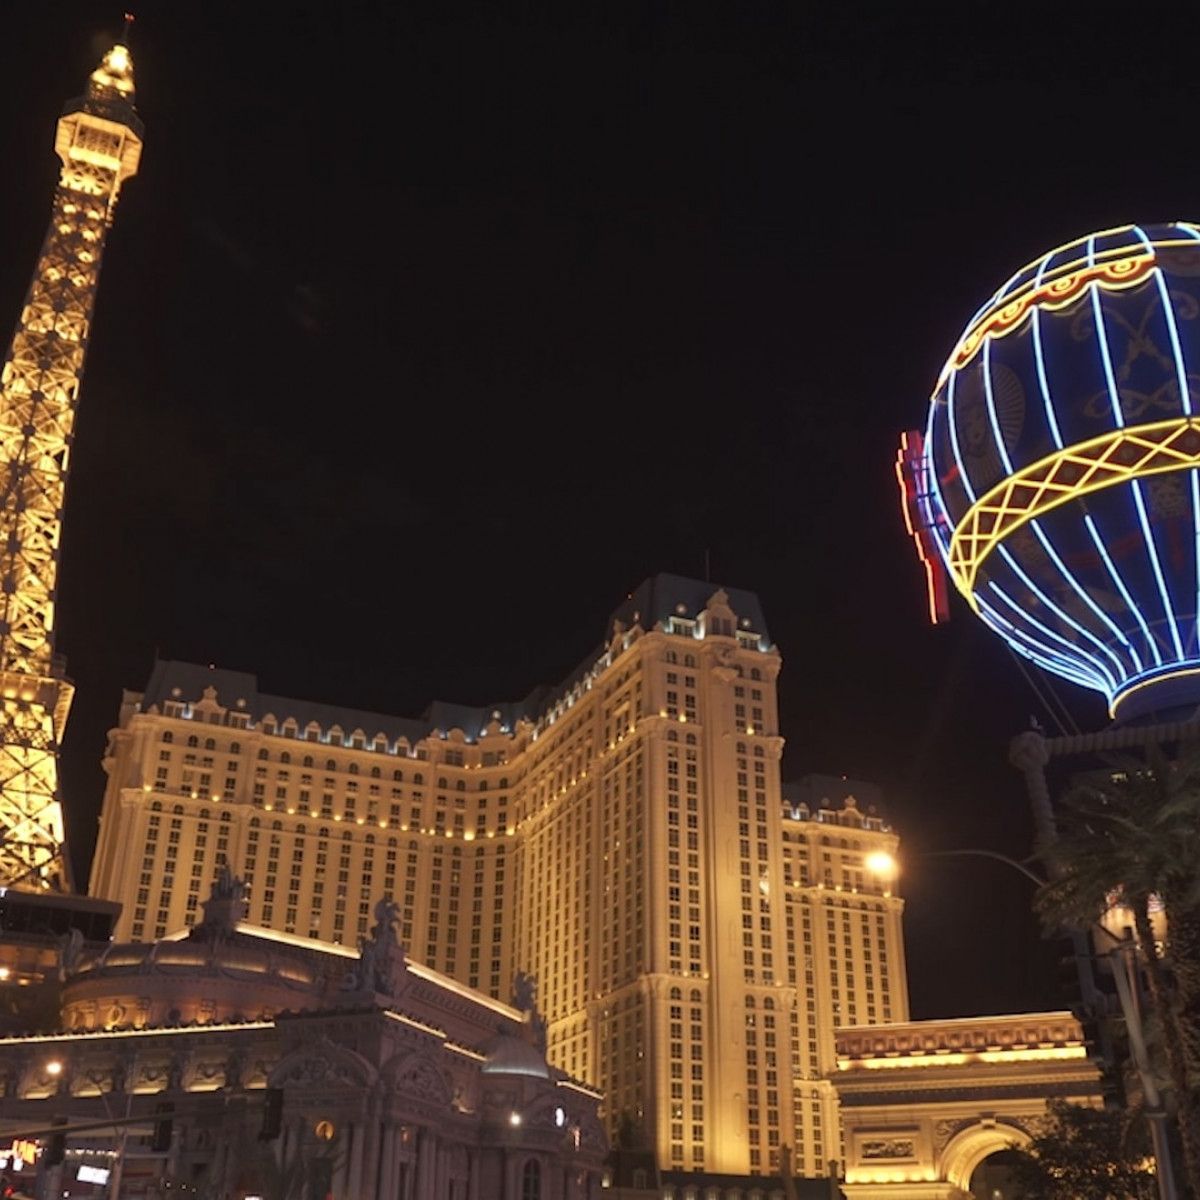 Las Vegas Bally E Replica Della Torre Eiffel Di Parigi a Las Vegas